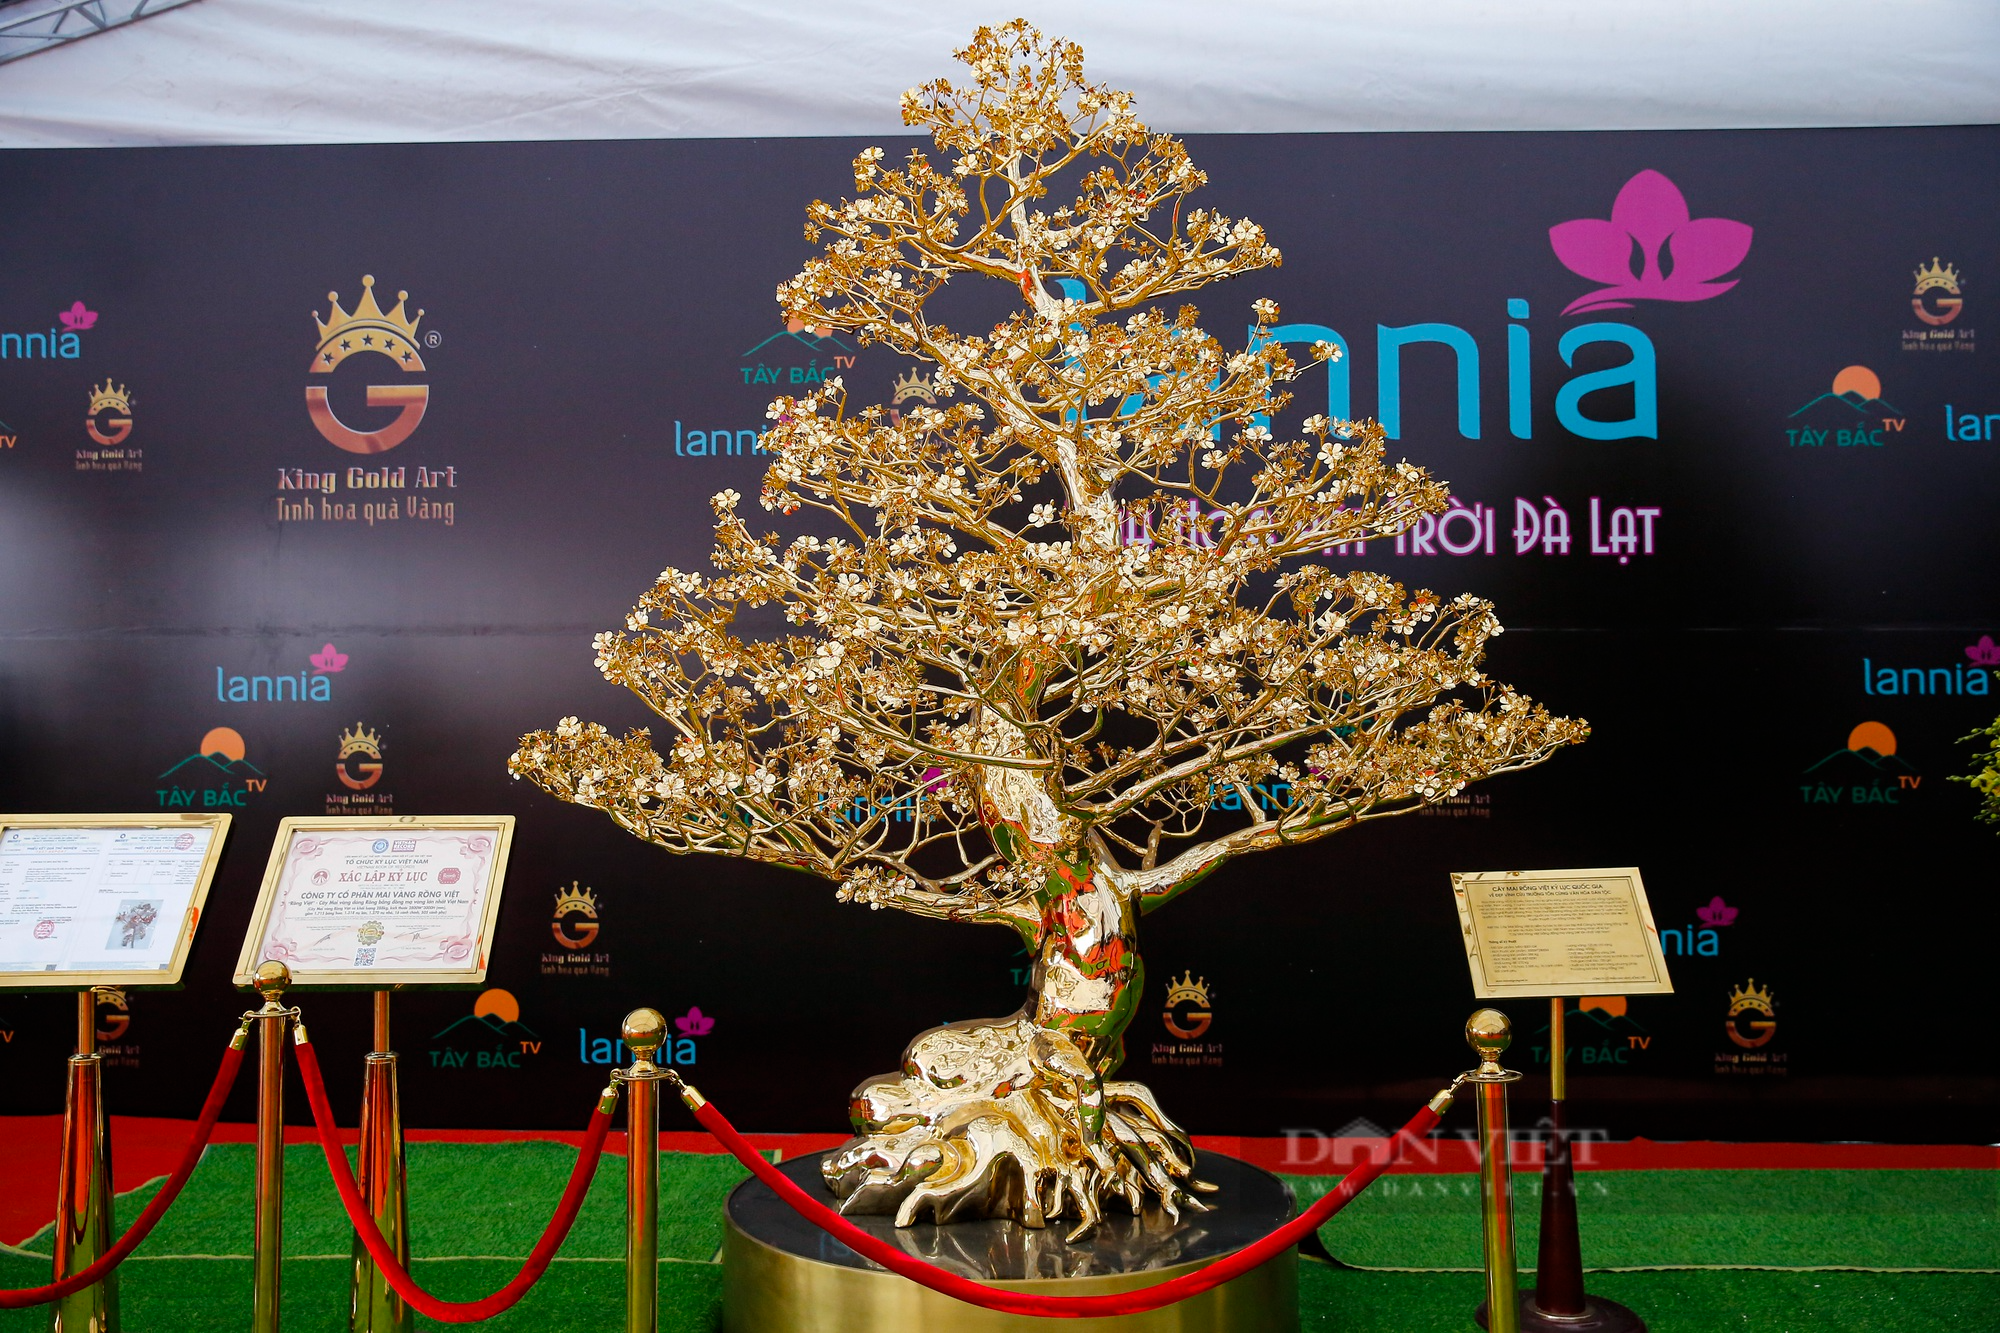 Ngắm cây mai mạ vàng 24k lớn nhất Việt Nam được chào bán 5,5 tỷ đồng tại Hà Nội - Ảnh 1.